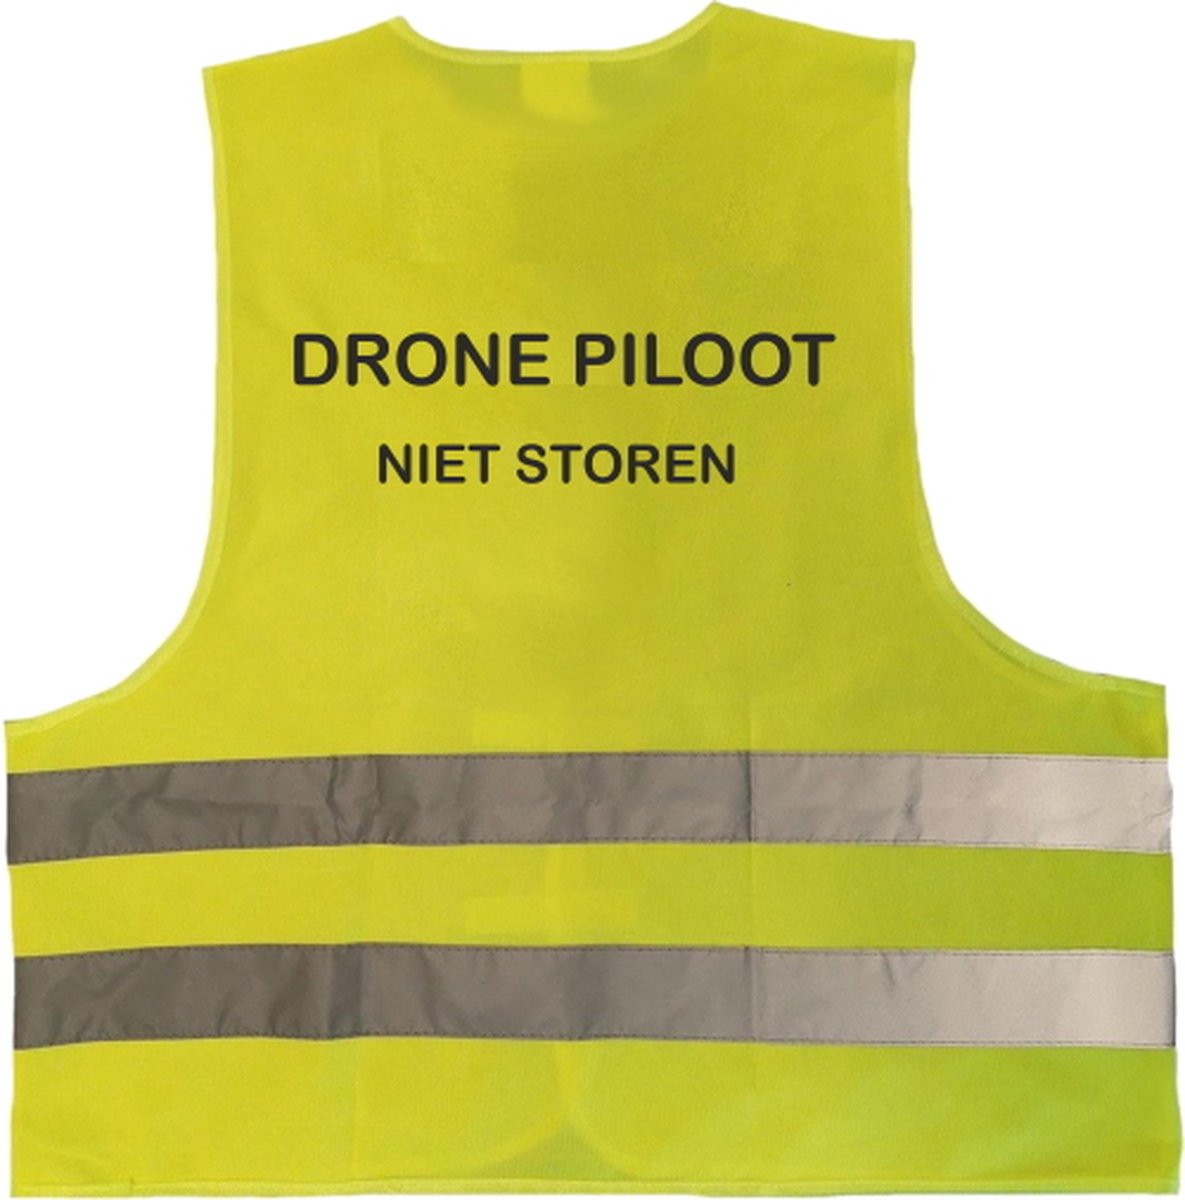 Hesje drone piloot geel